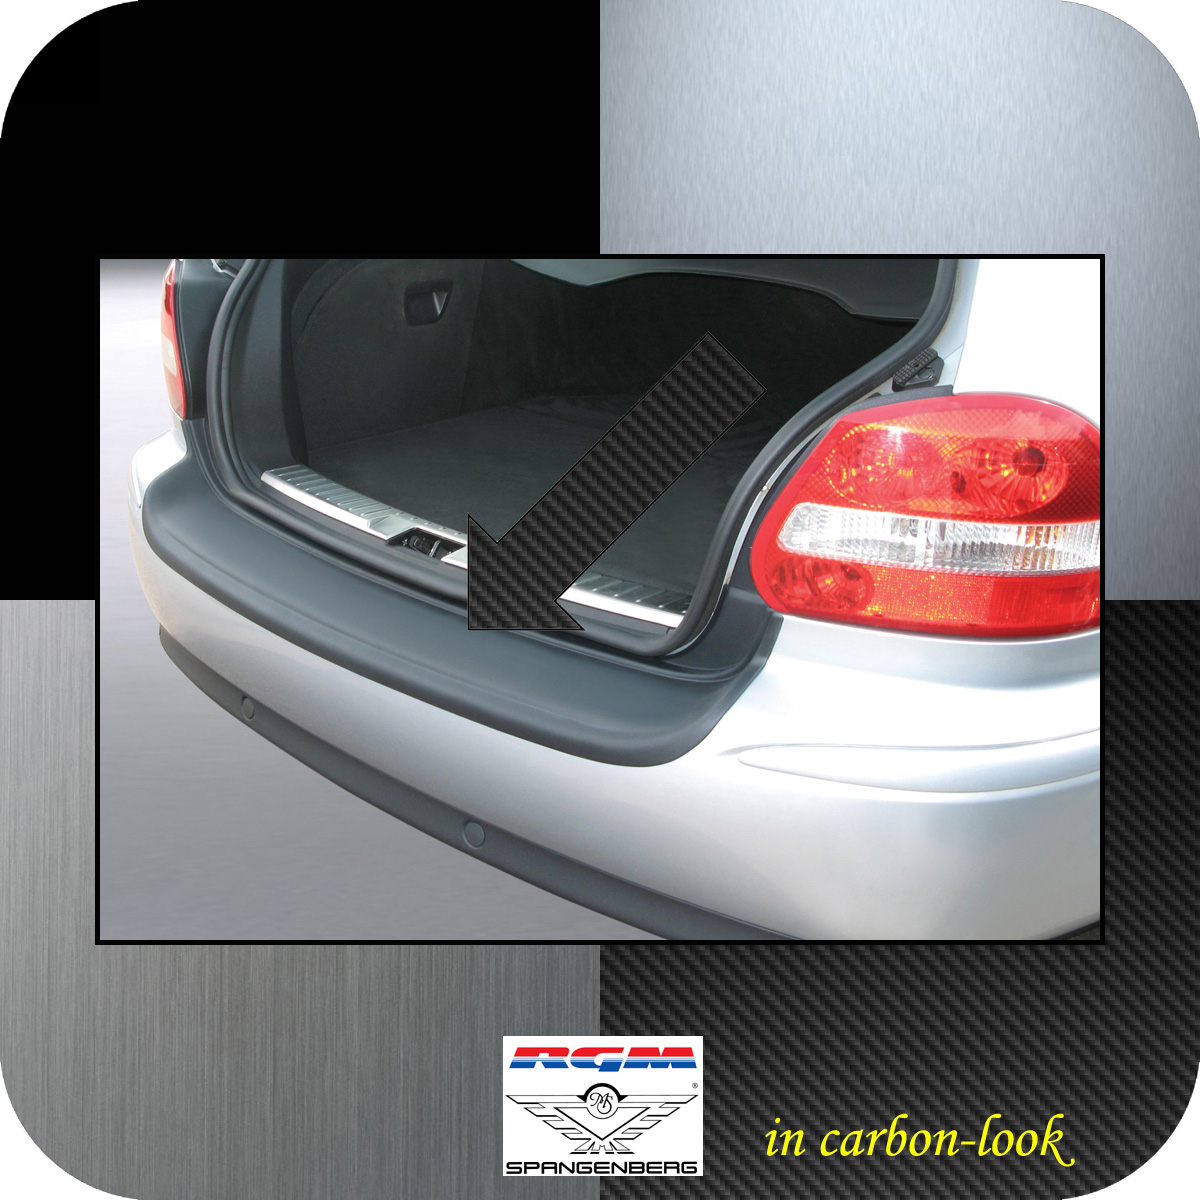 Ladekantenschutz Carbon-Look Jaguar X-Type Estate Kombi vor Mopf 2003-07 3509335